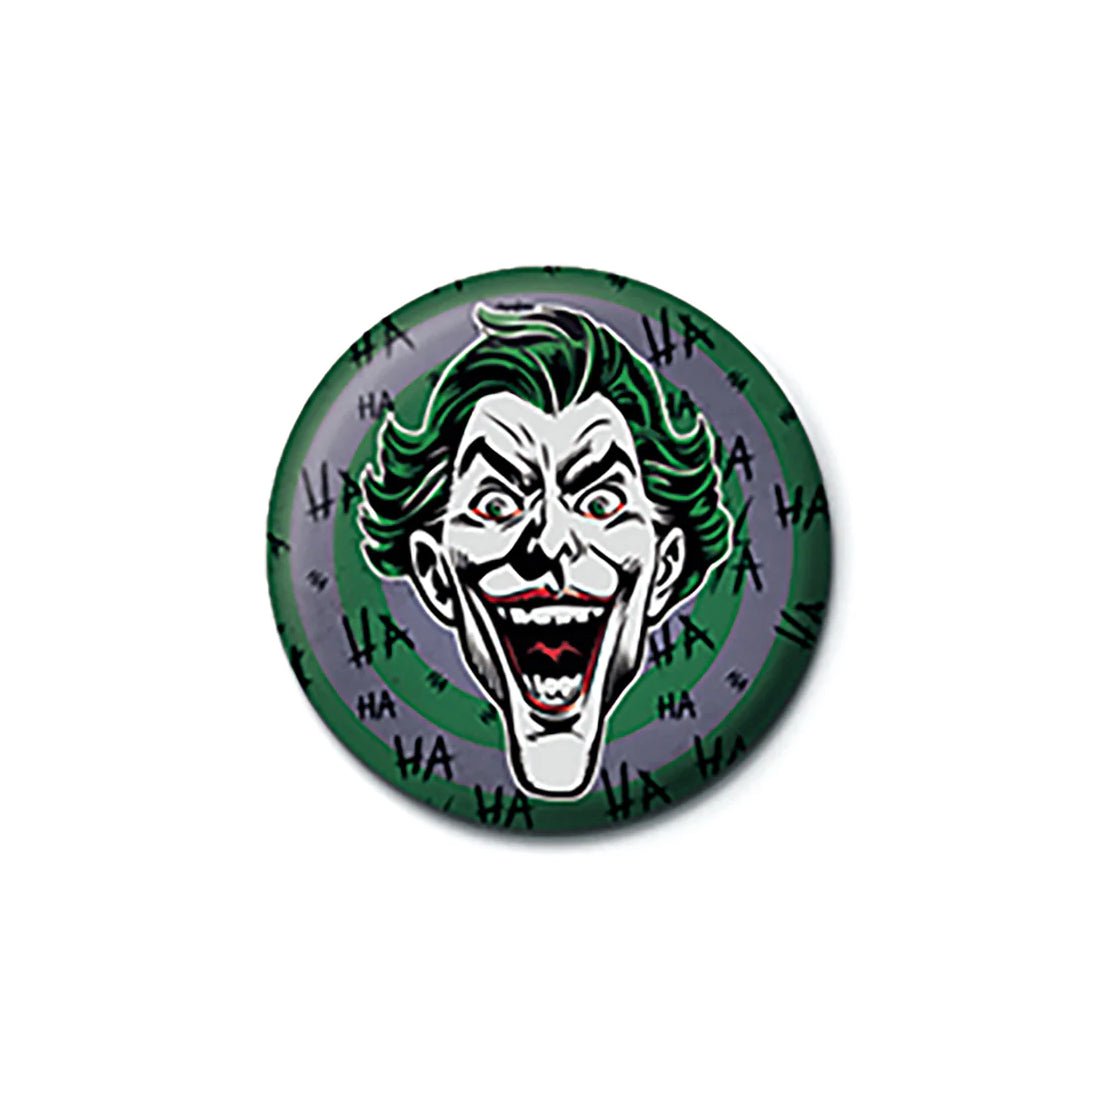 The Joker - Hahaha Button Badge - أكسسوار - Store 974 | ستور ٩٧٤